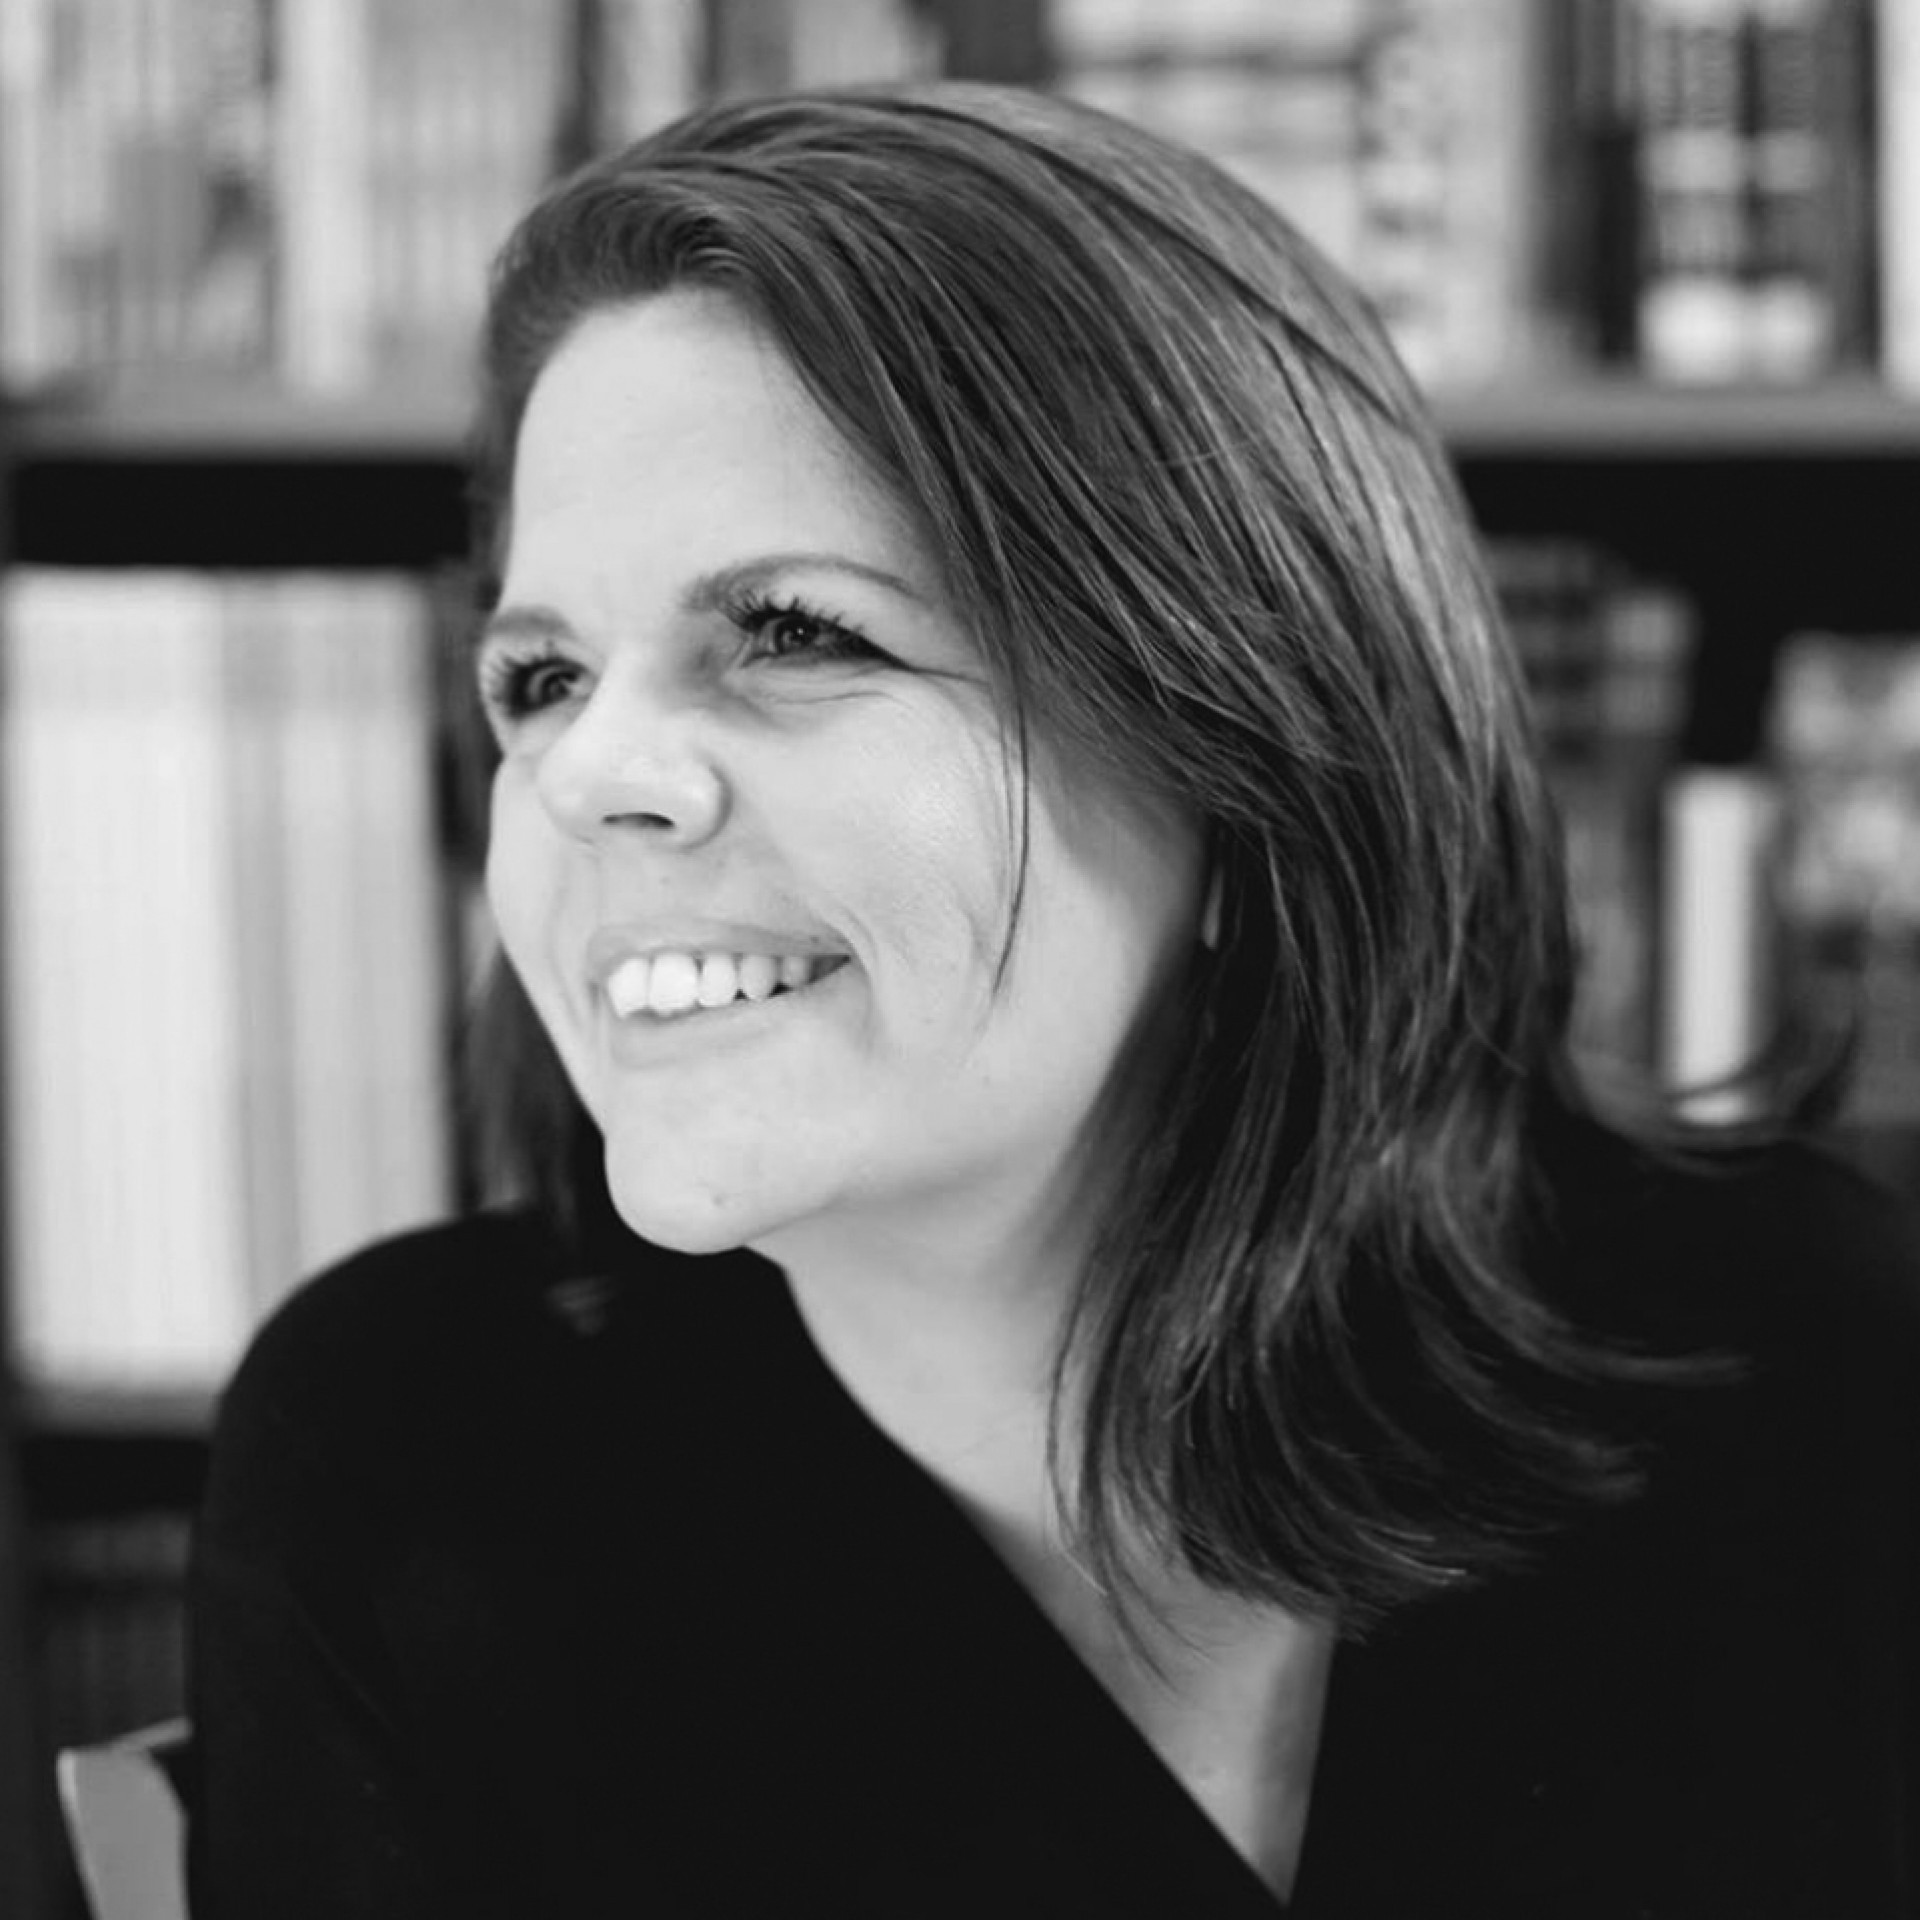 Simone Paulino é jornalista, escritora, editora. Mestre em Teoria Literária e Literatura Comparada pela Universidade de São Paulo (USP), é criadora da Nós.